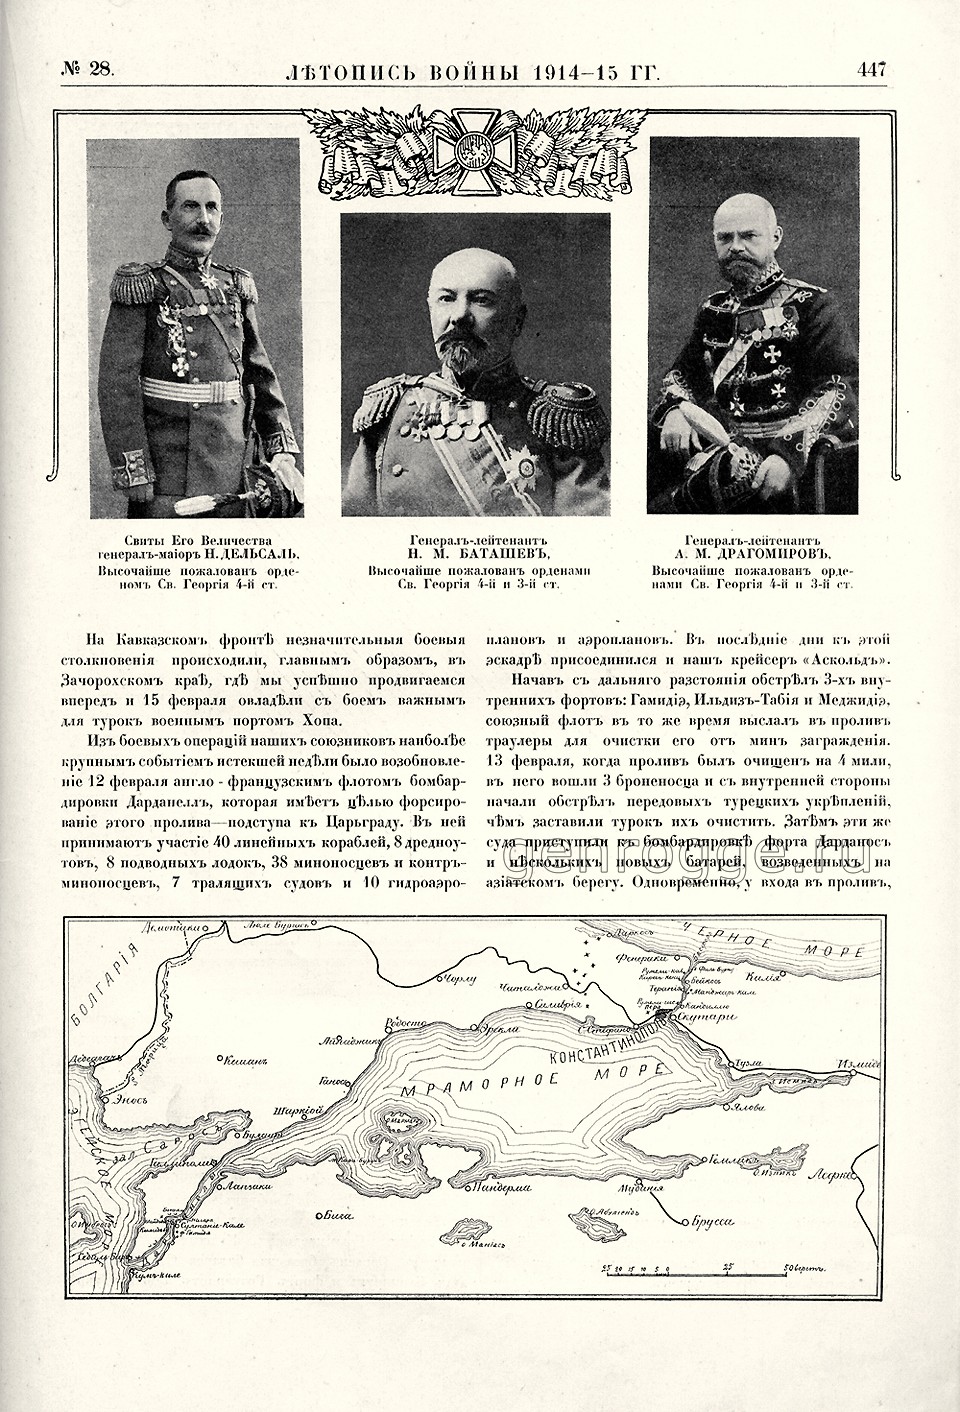   1914-15 . `1915 .,  28, . 447